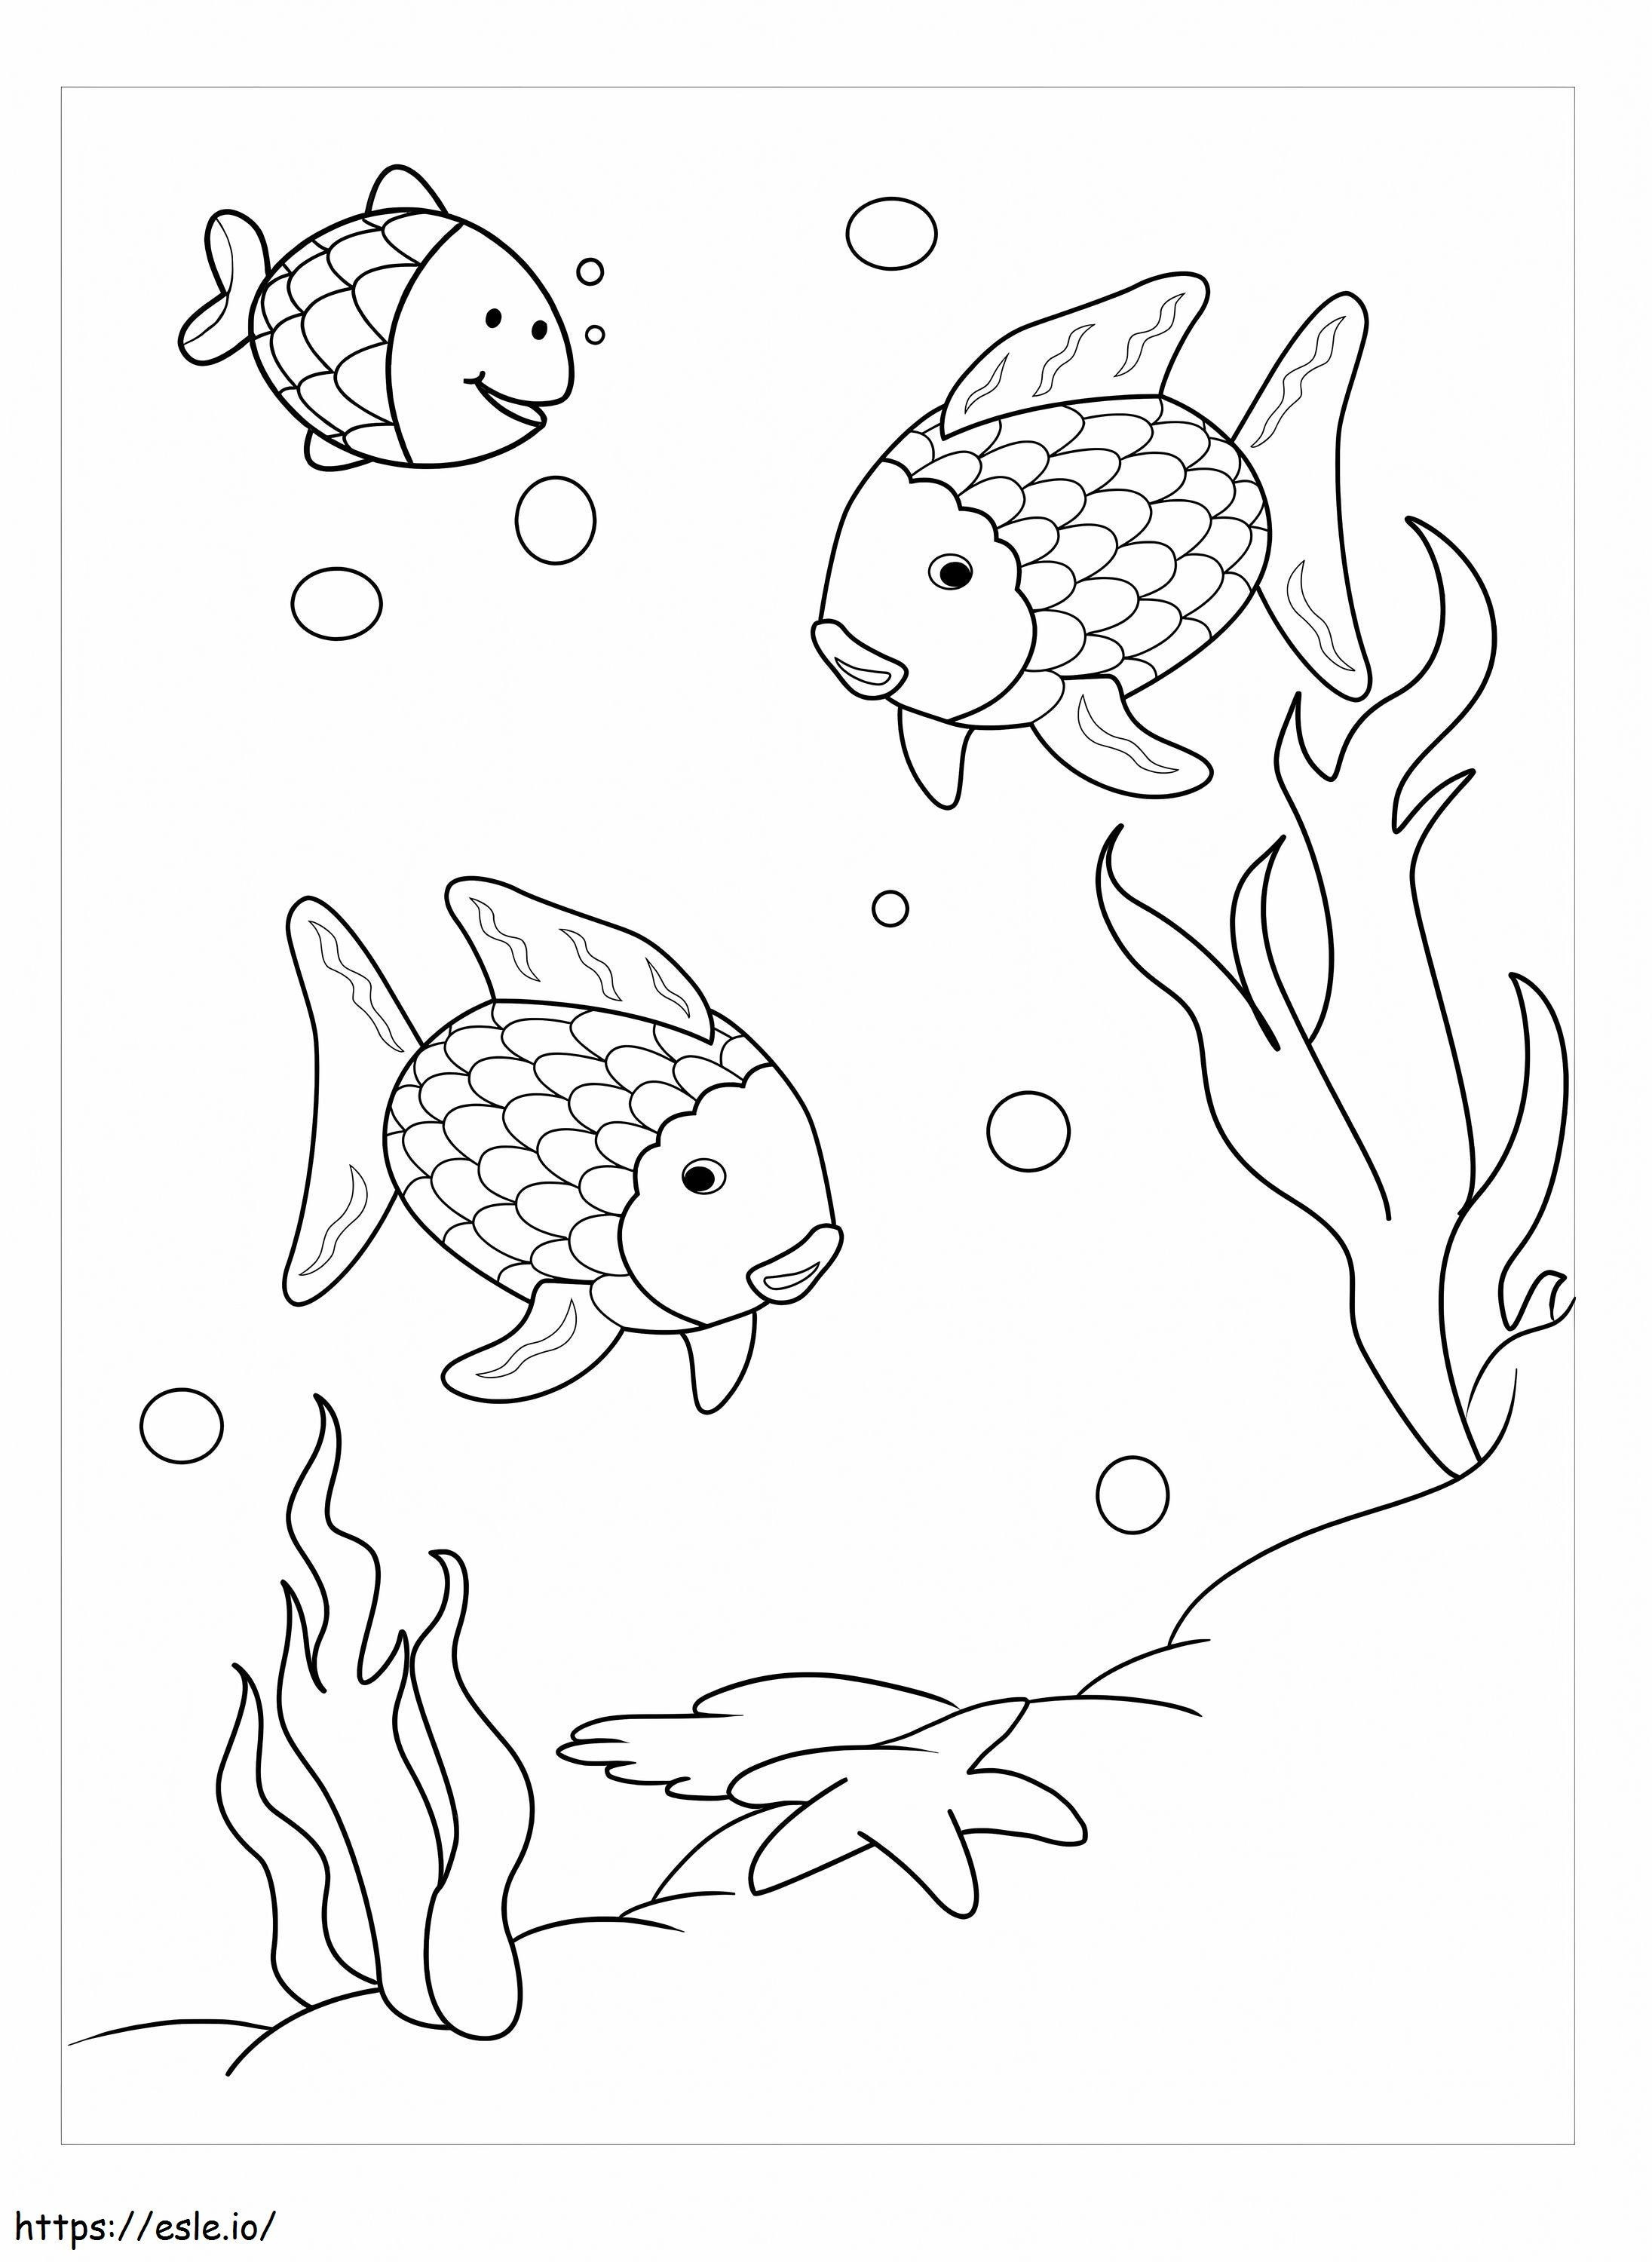 Drei Regenbogenfische ausmalbilder